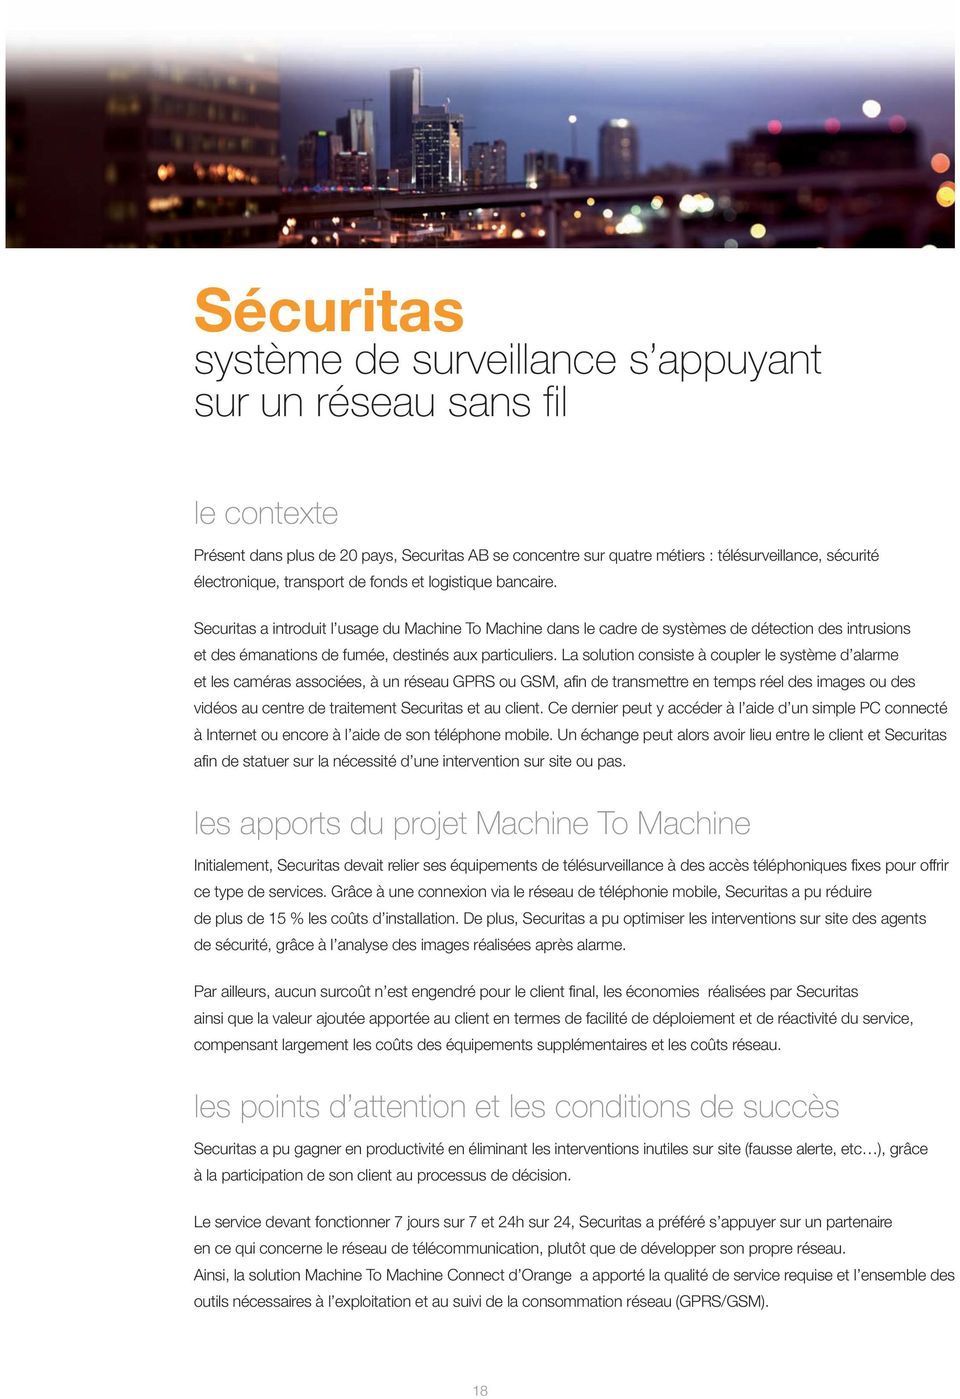 Securitas a introduit l usage du Machine To Machine dans le cadre de systèmes de détection des intrusions et des émanations de fumée, destinés aux particuliers.